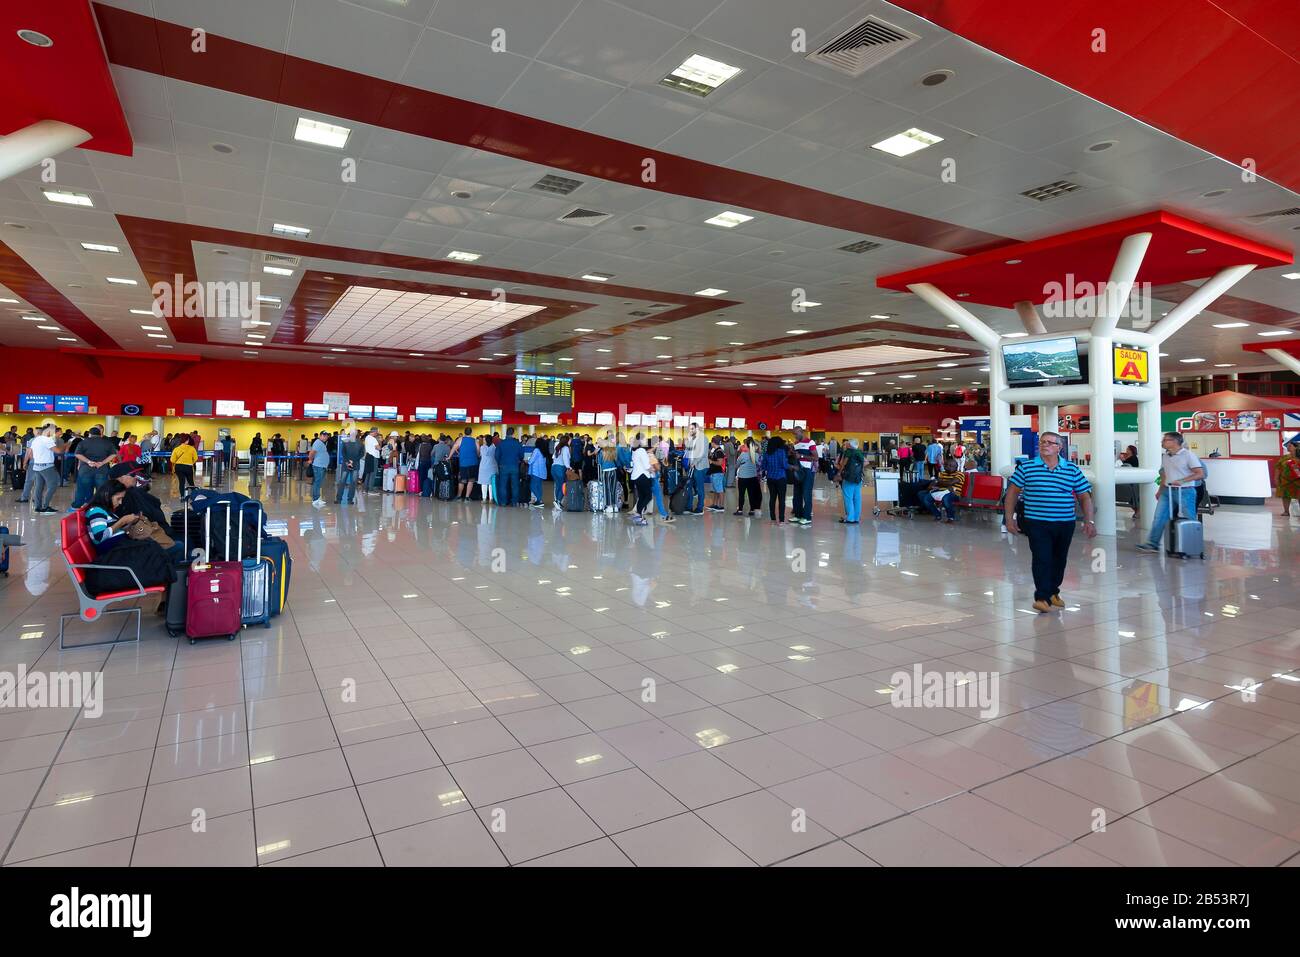 Innenbereich des internationalen Terminals des Flughafens Jose Marti, der Havanna, Kuba, bedient. Check-In-Halle mit langen Warteschlangen. Stockfoto